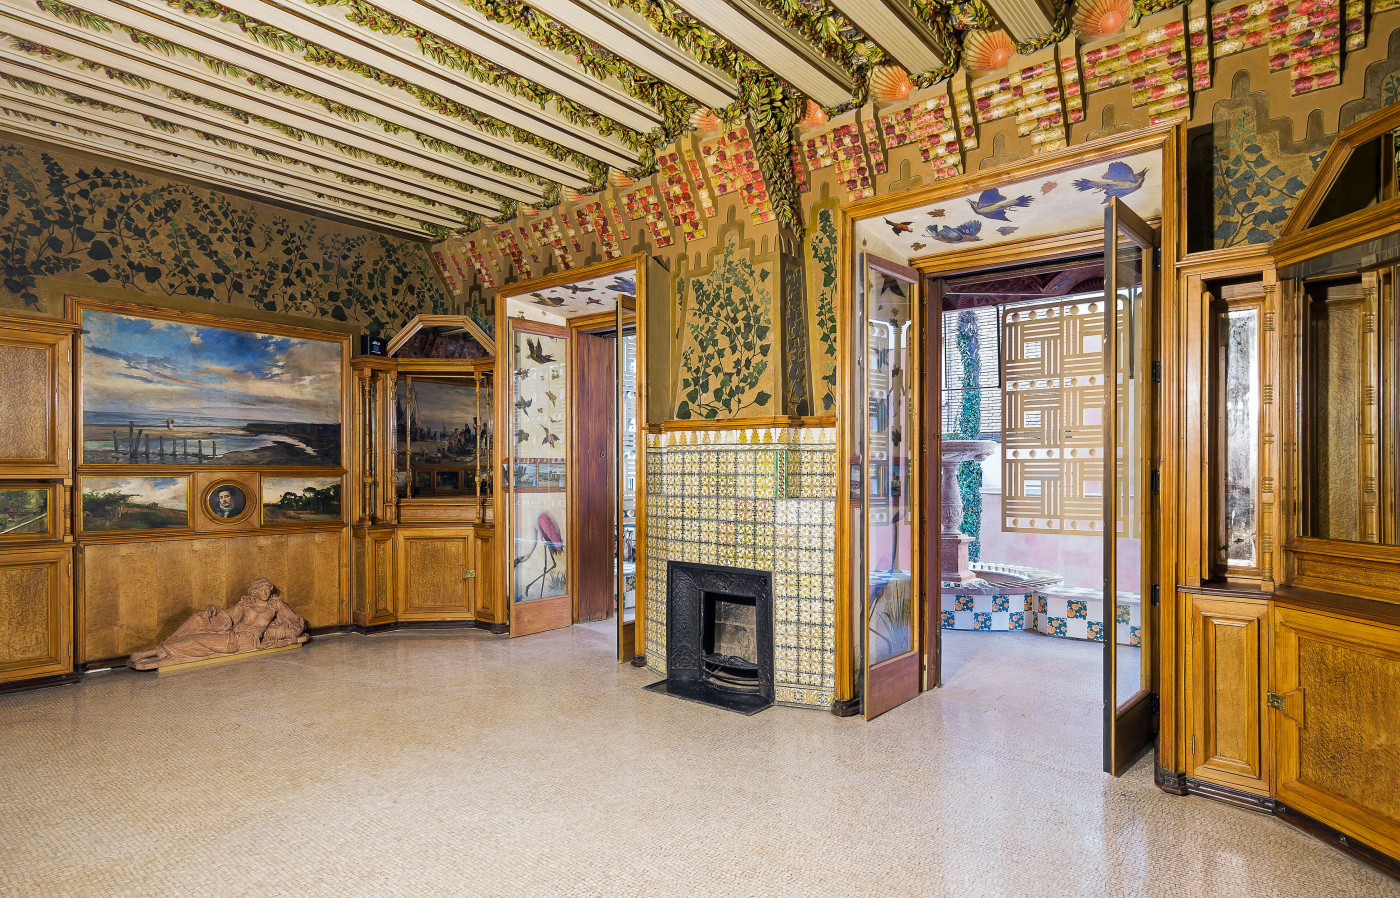 Первый дом, построенный Гауди, открыл свои двери в Барселоне в качестве музея Гауди, Винсенса, здания, также, архитектора, особняк, Vicens, Висенса, течение, первый, некоторые, стоимость, интерьеров, только, Барселоне, который, проект, музея, между, декор